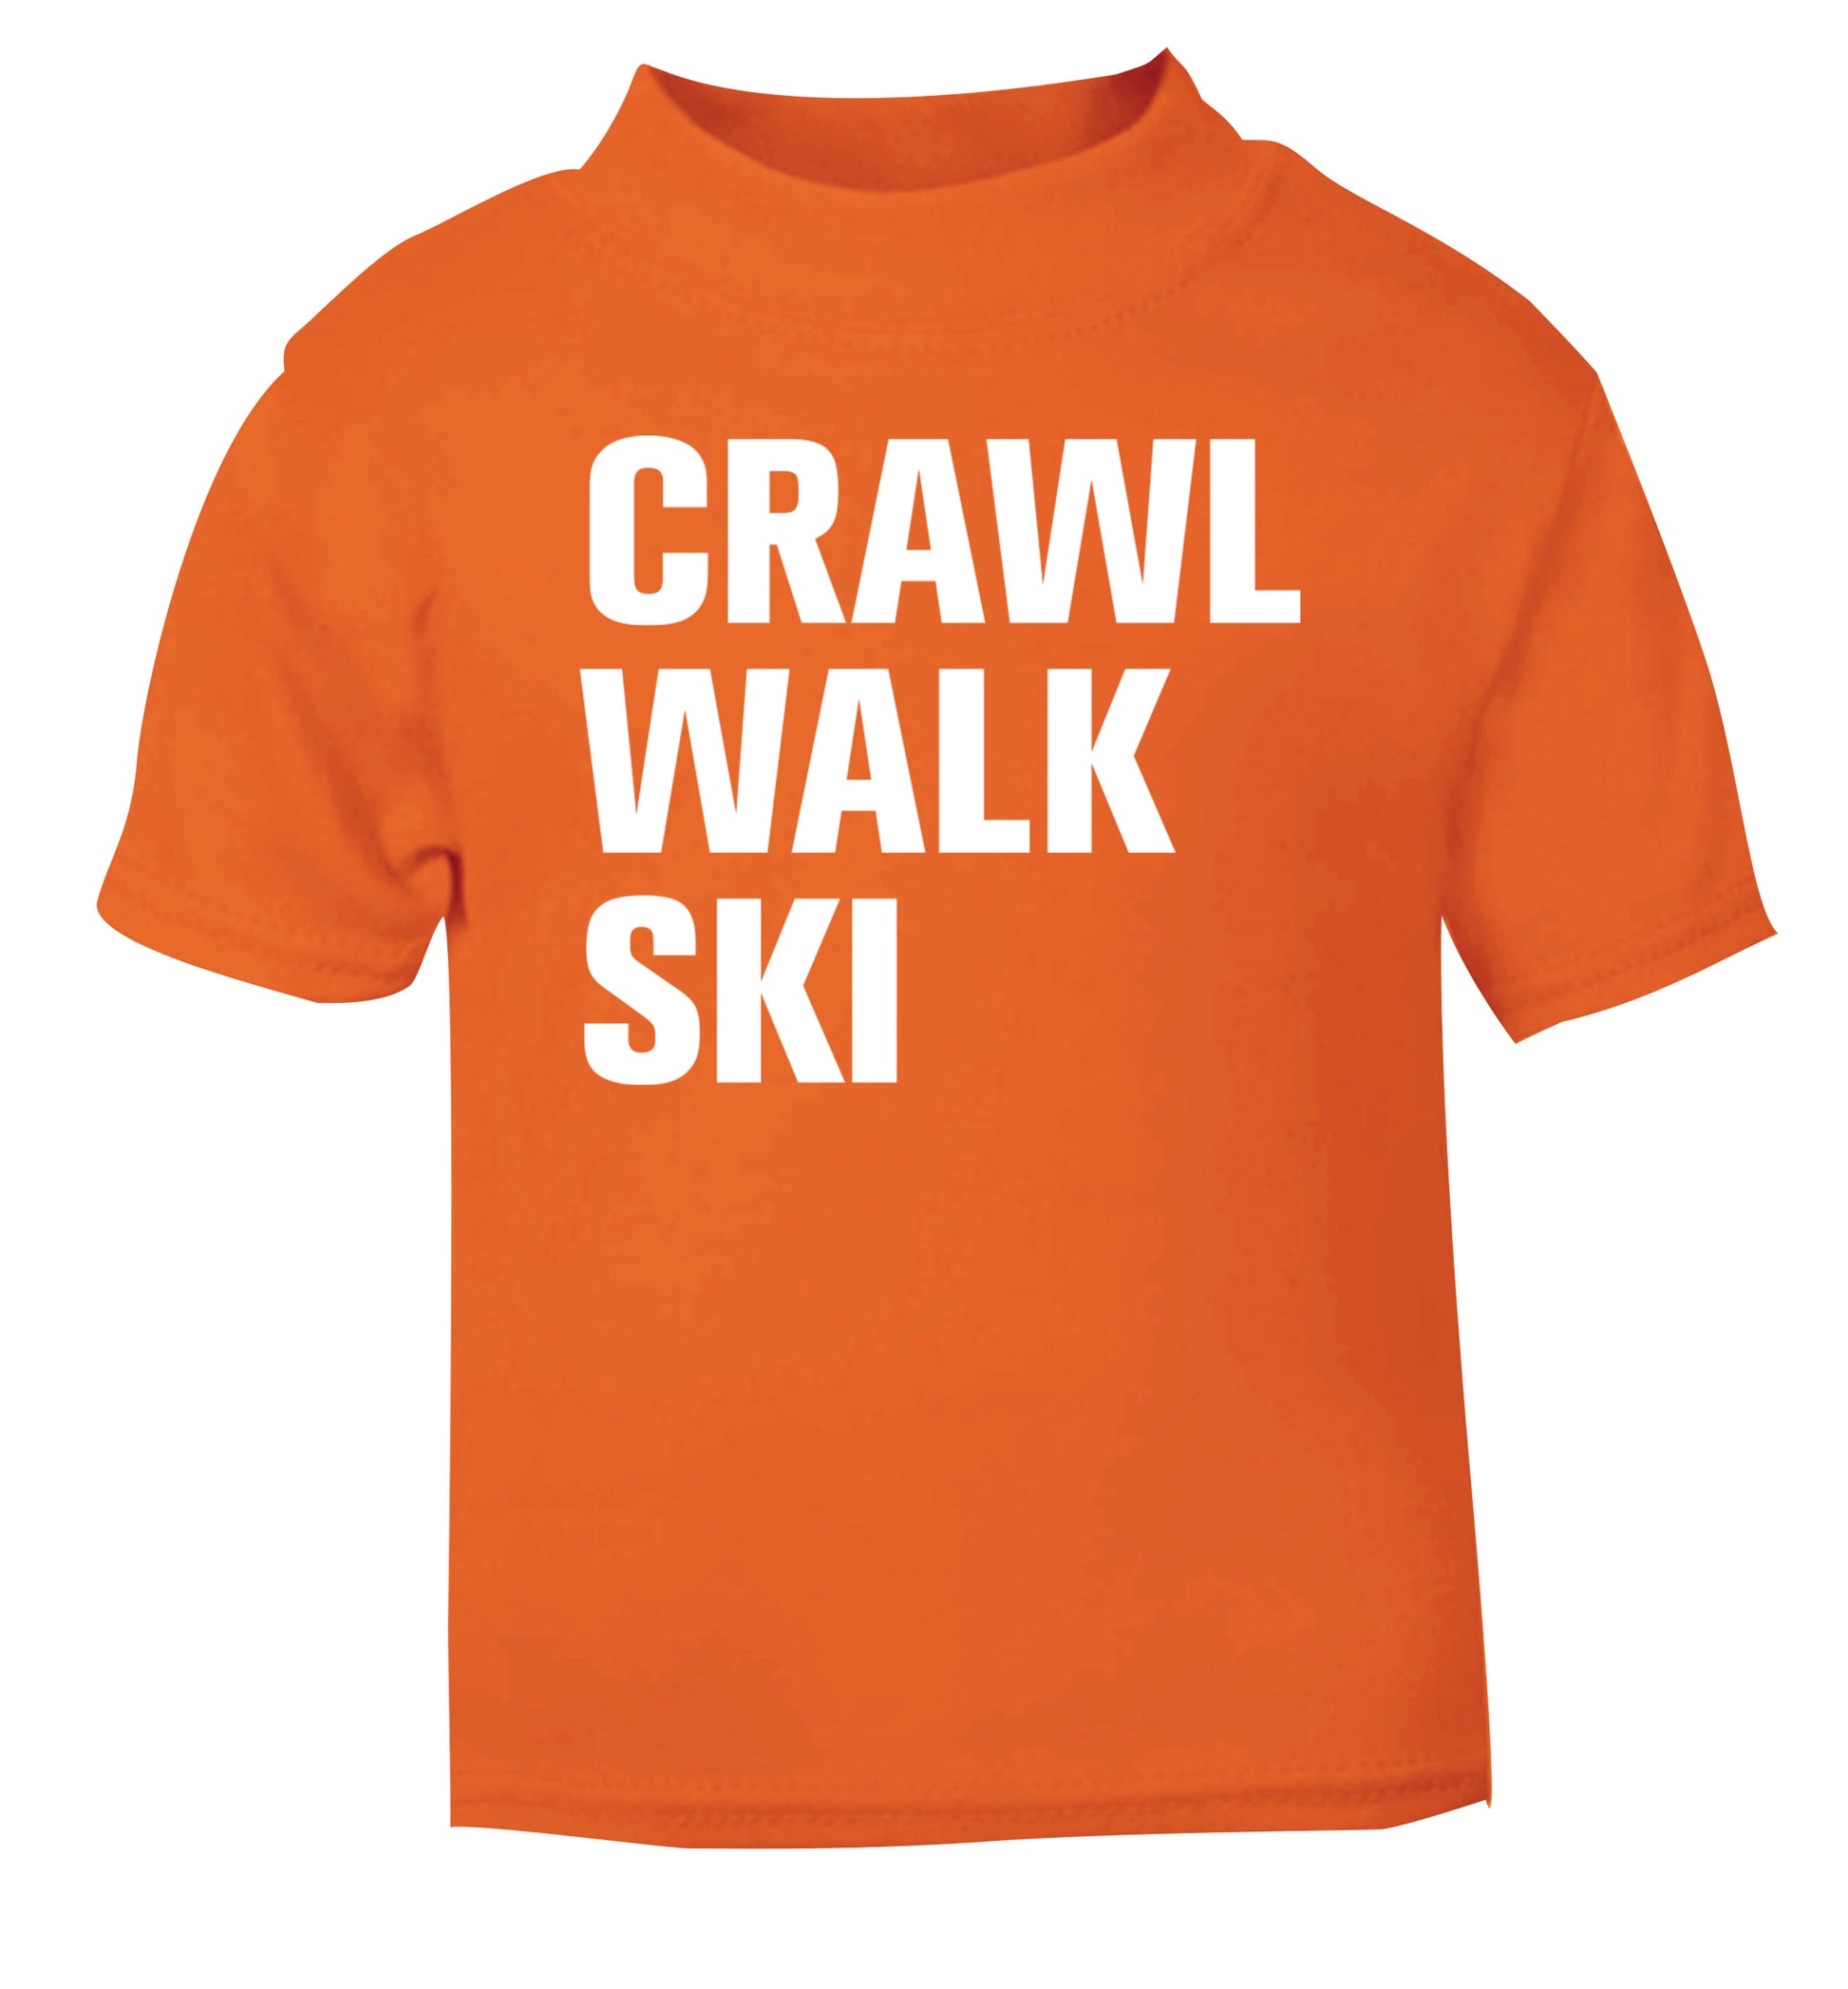 Crawl walk ski orange Baby Toddler Tshirt 2 Years